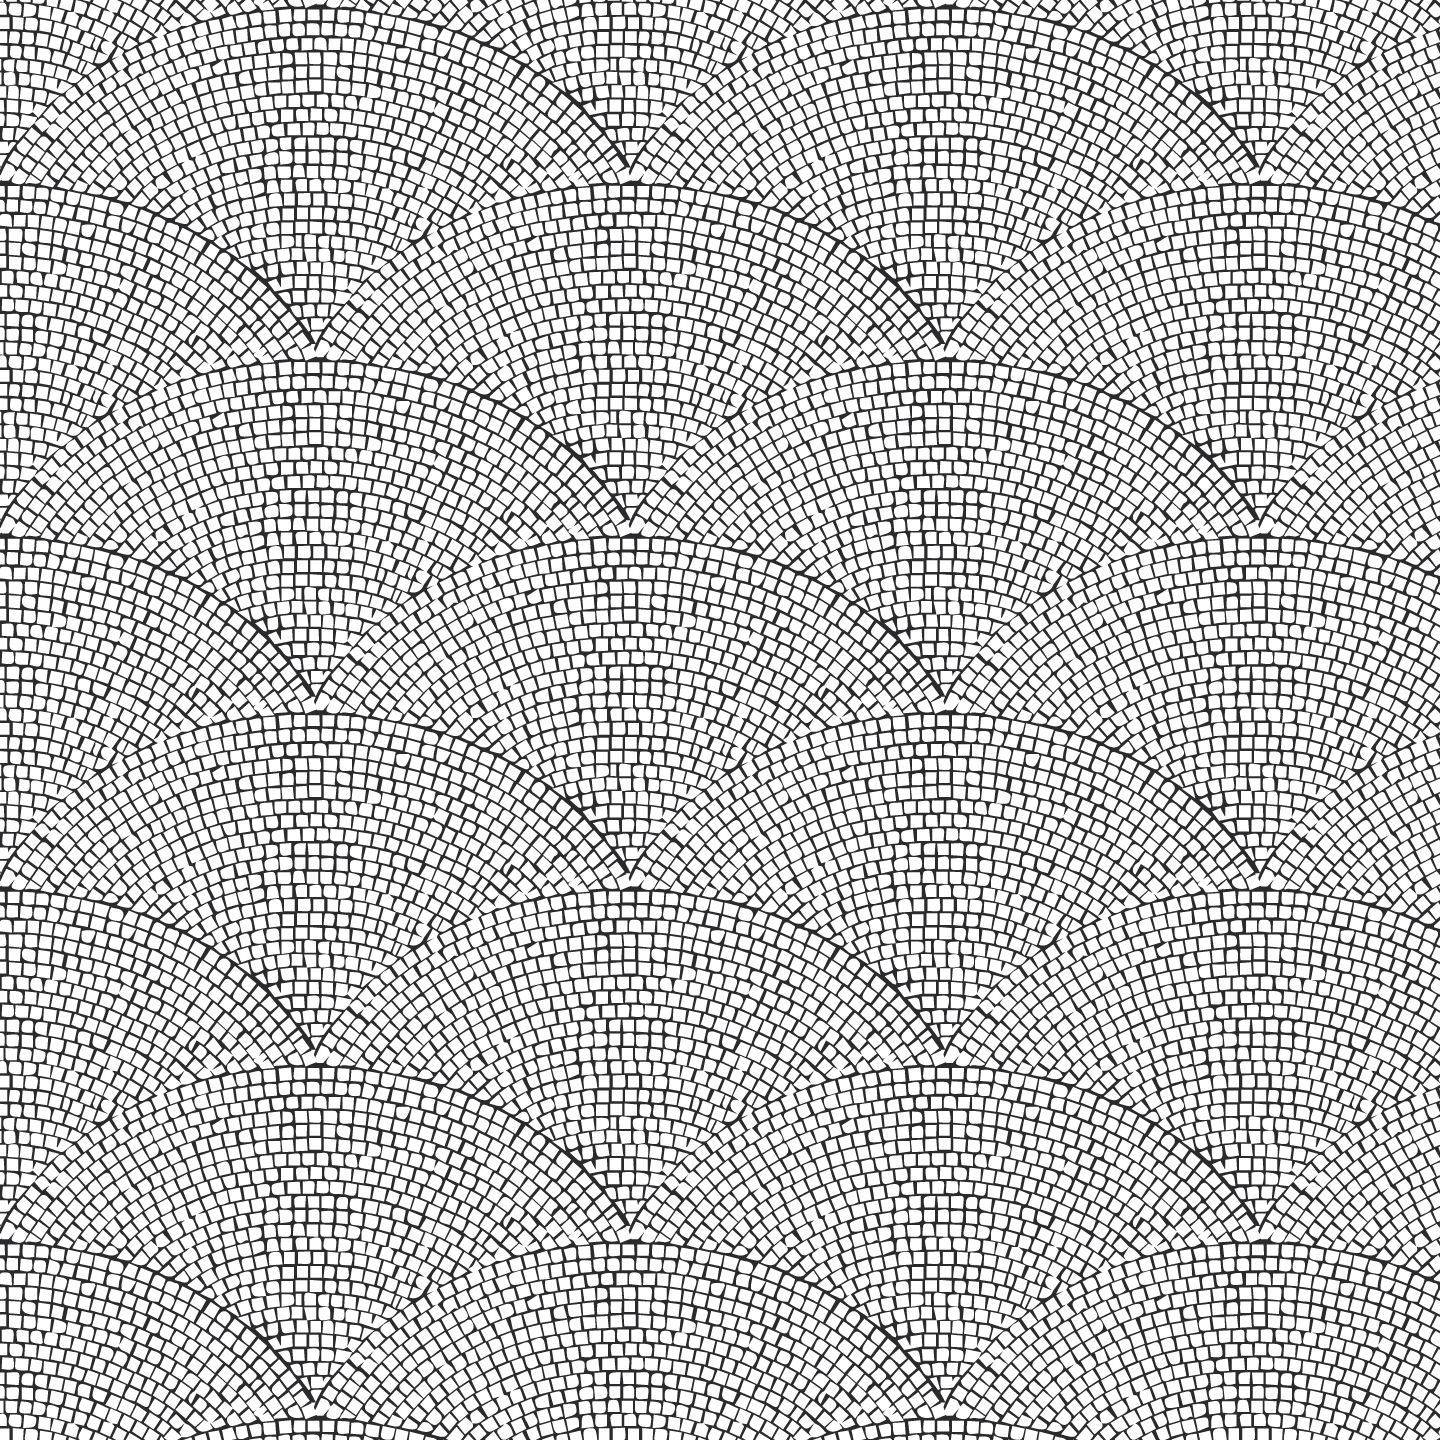 Roman-Tile-Pattern.jpg